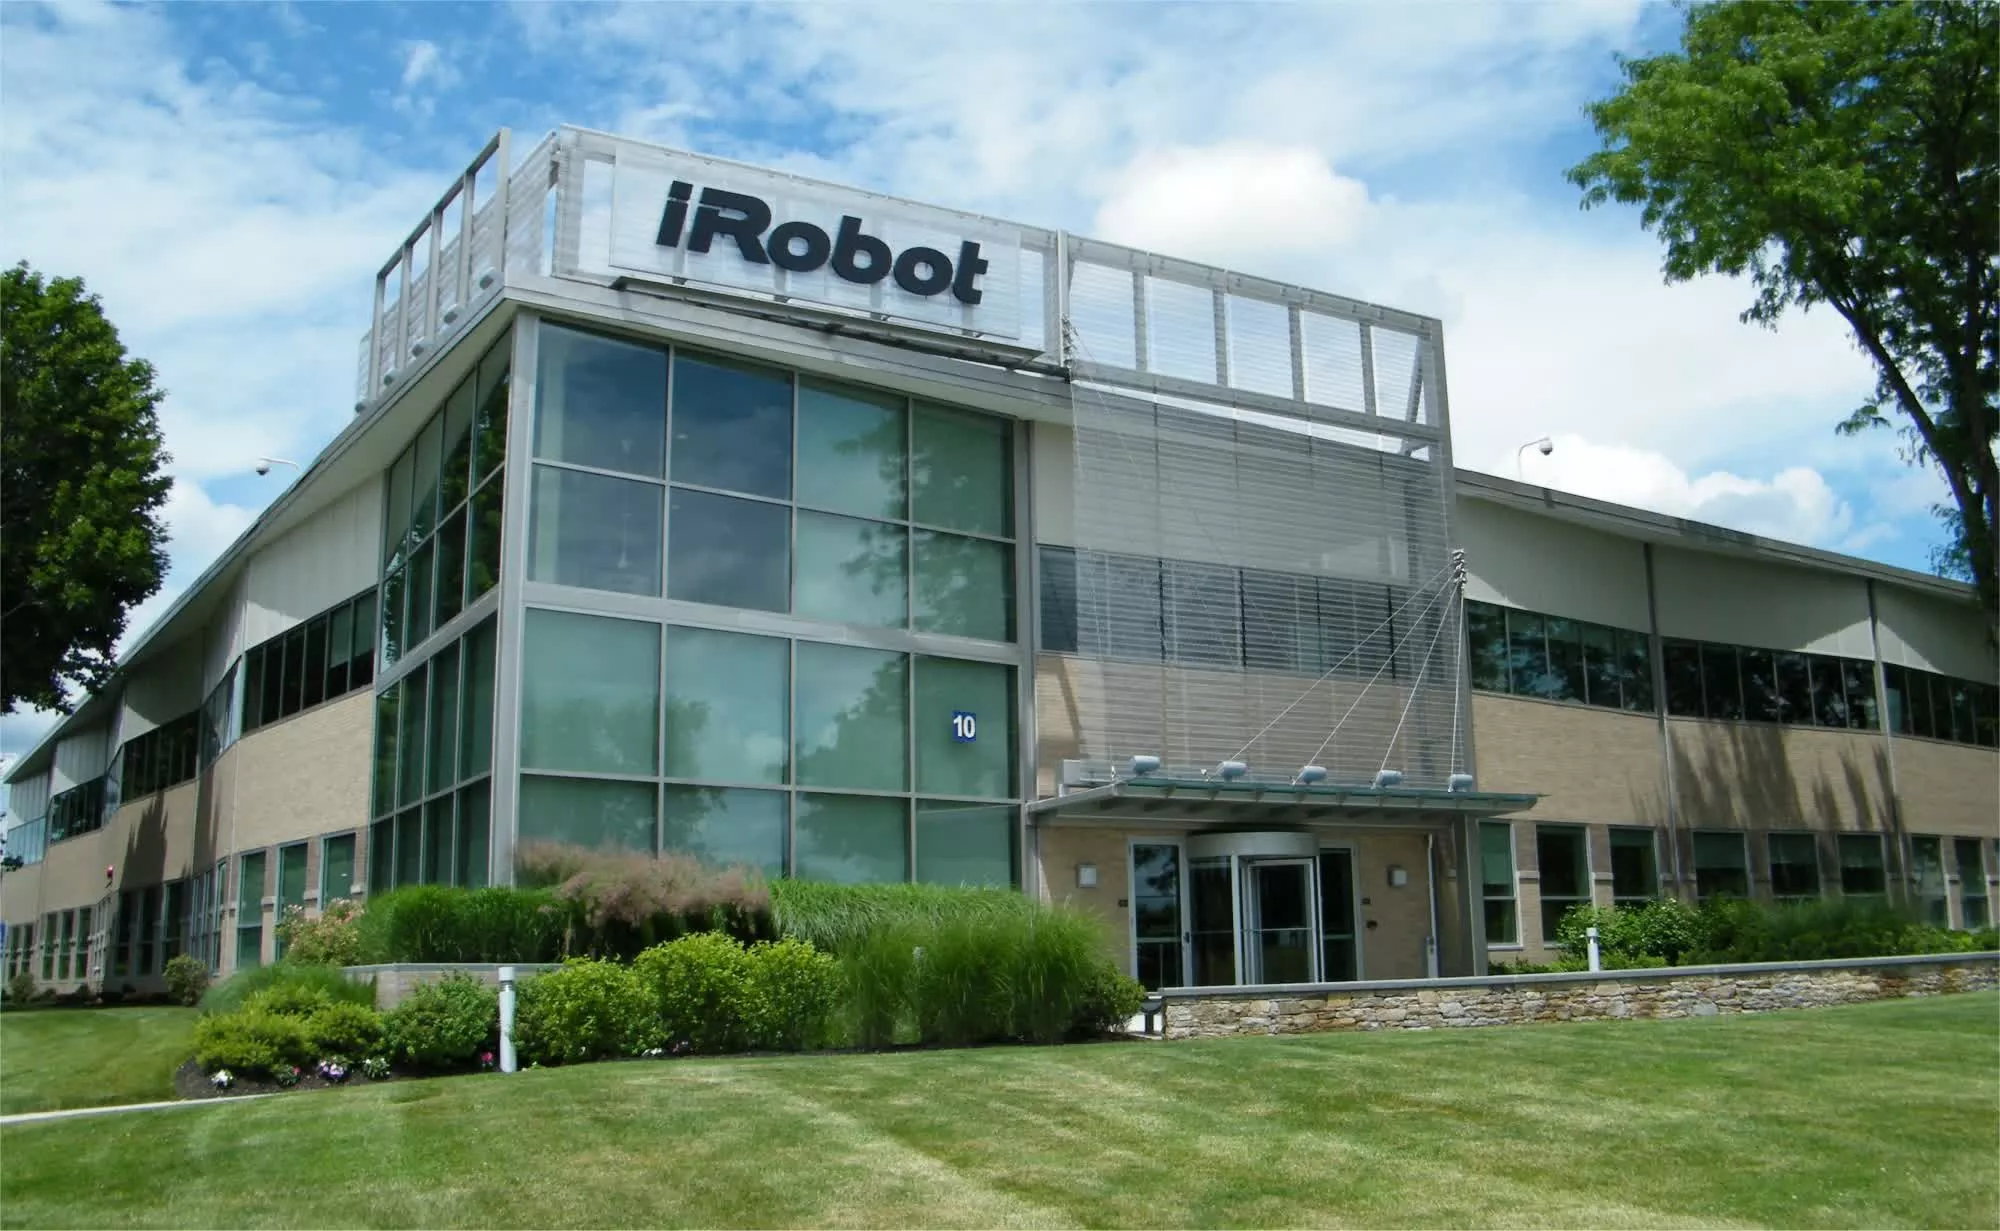 Amazon l’acquisition pour milliard dollars fabricant Roomba iRobot raison problèmes réglementaires européens